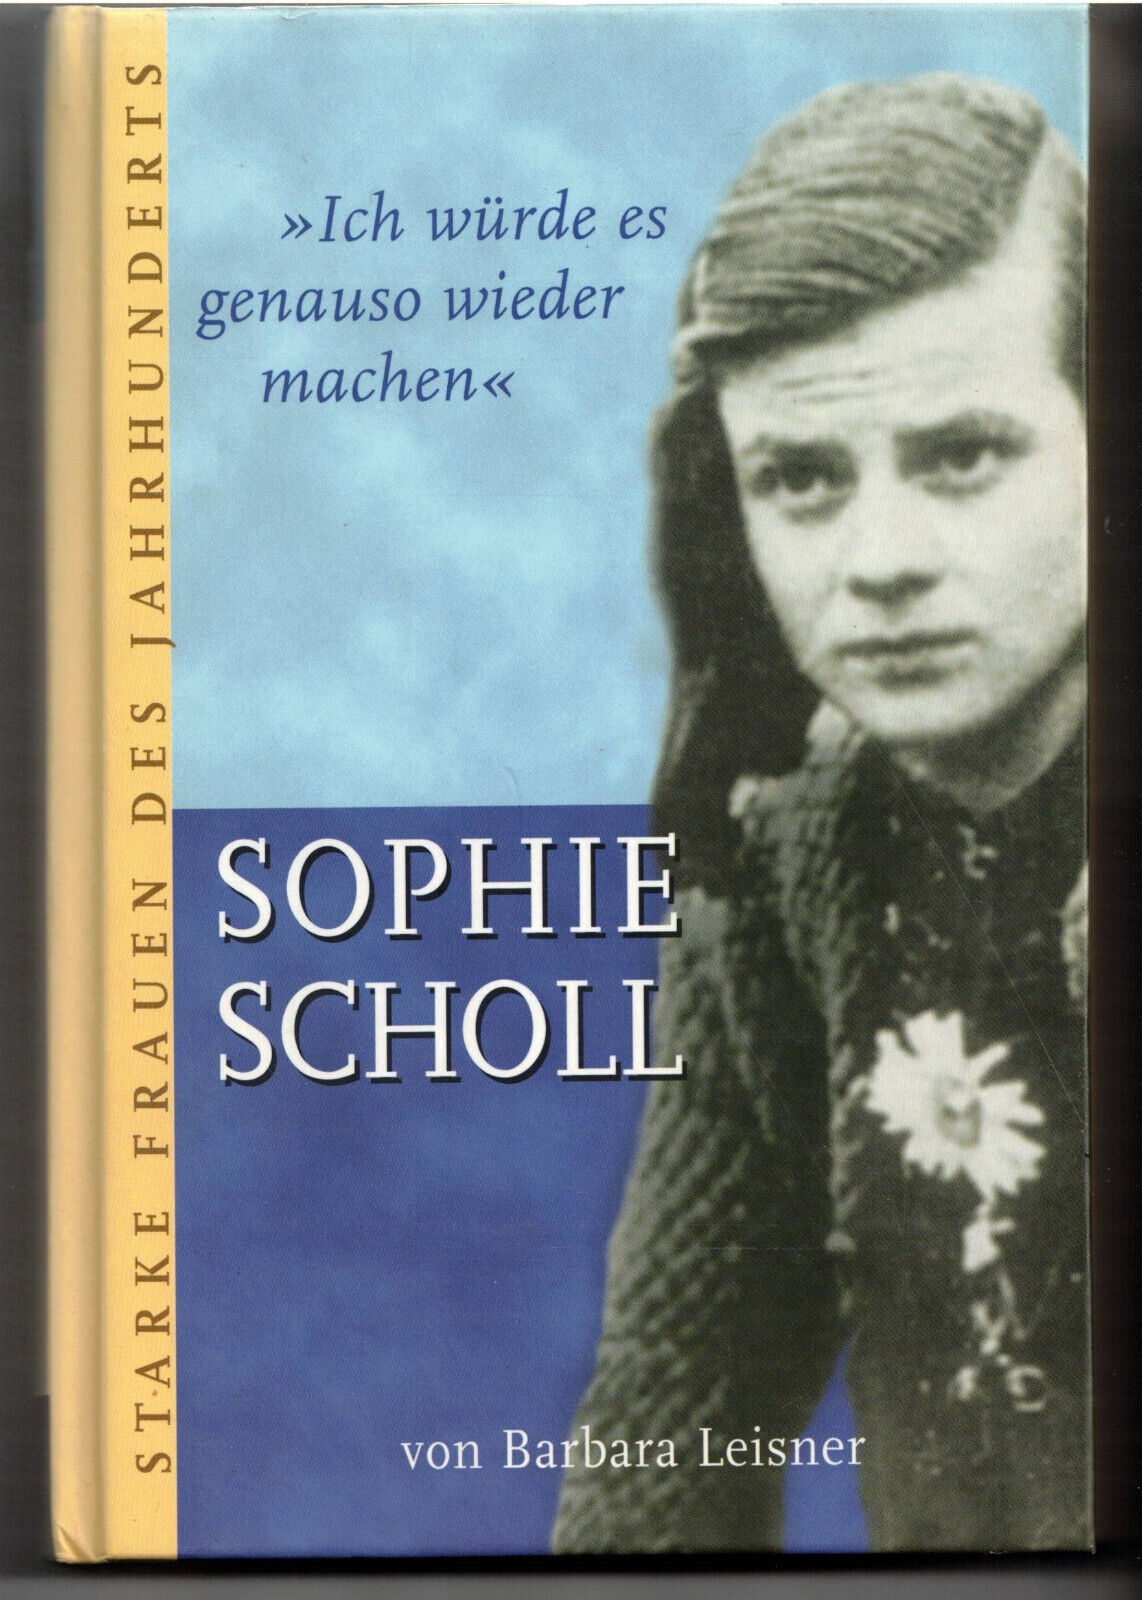 Barbara Leisner: Sophie Scholl - Ich würde es genauso wieder machen (2004) - Barbara Leisner